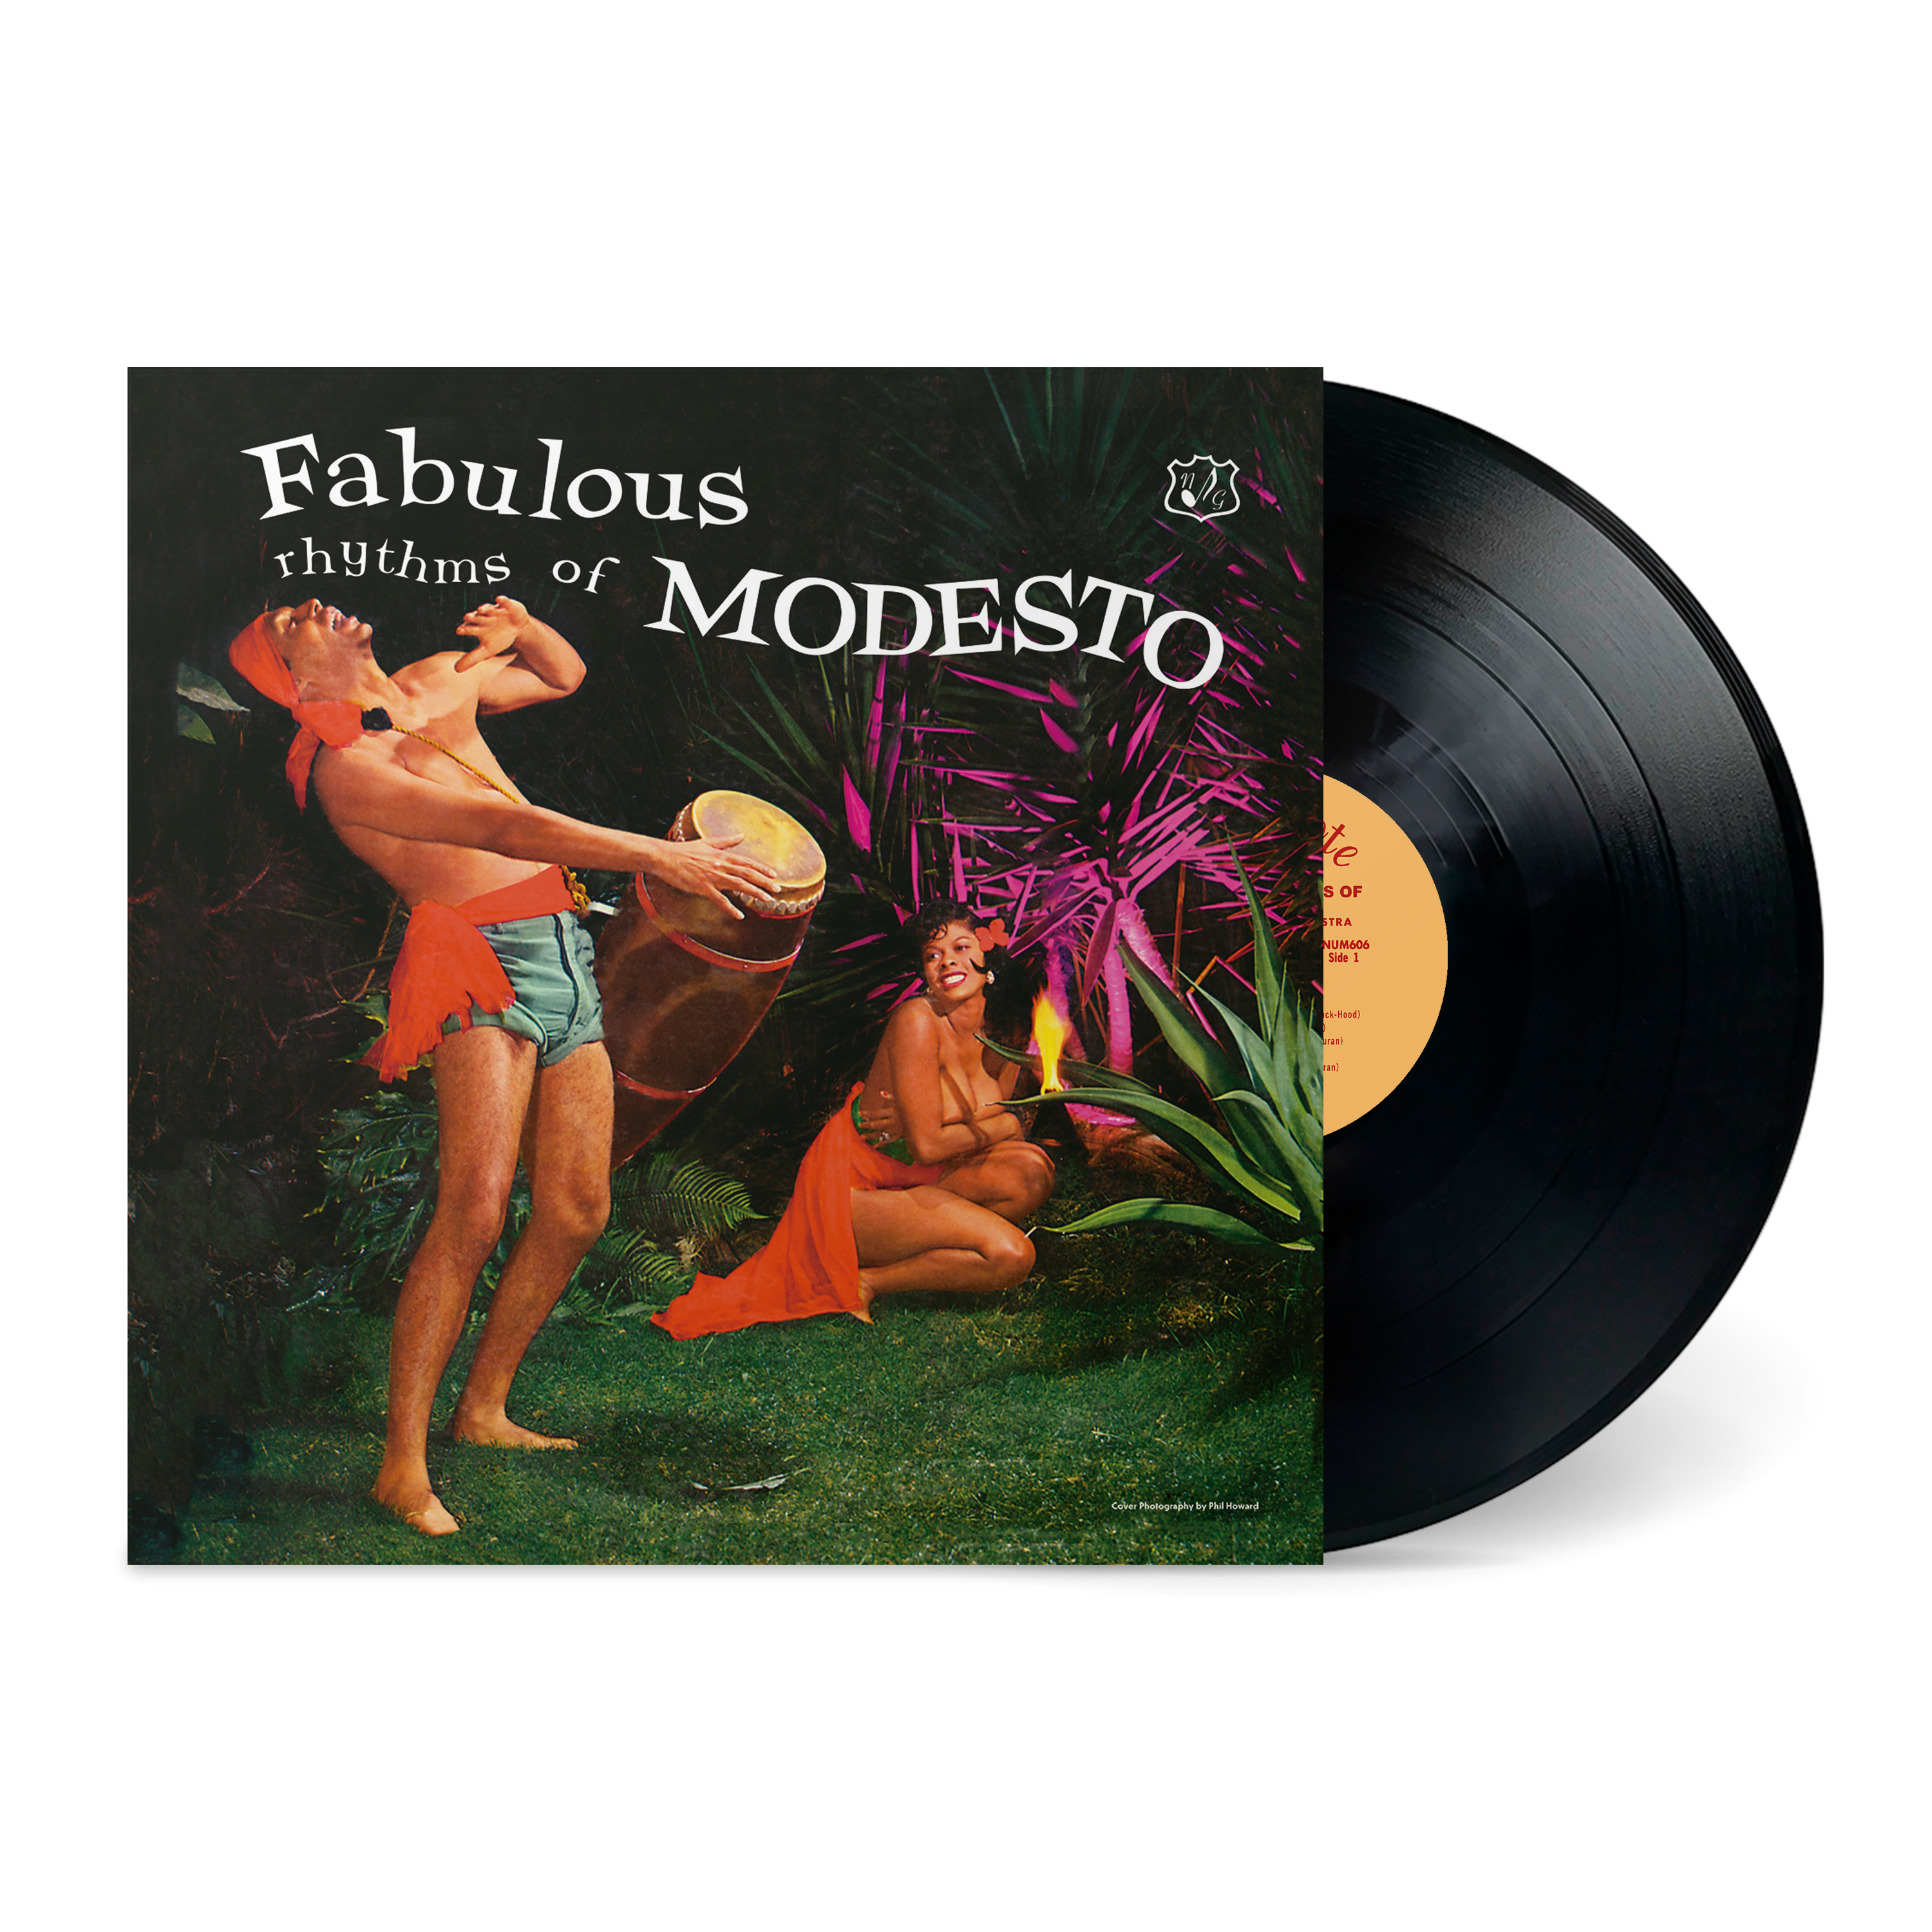 Modesto Duran & Orchestra - Fabulous Rhythms of Modesto: Vinyl LP